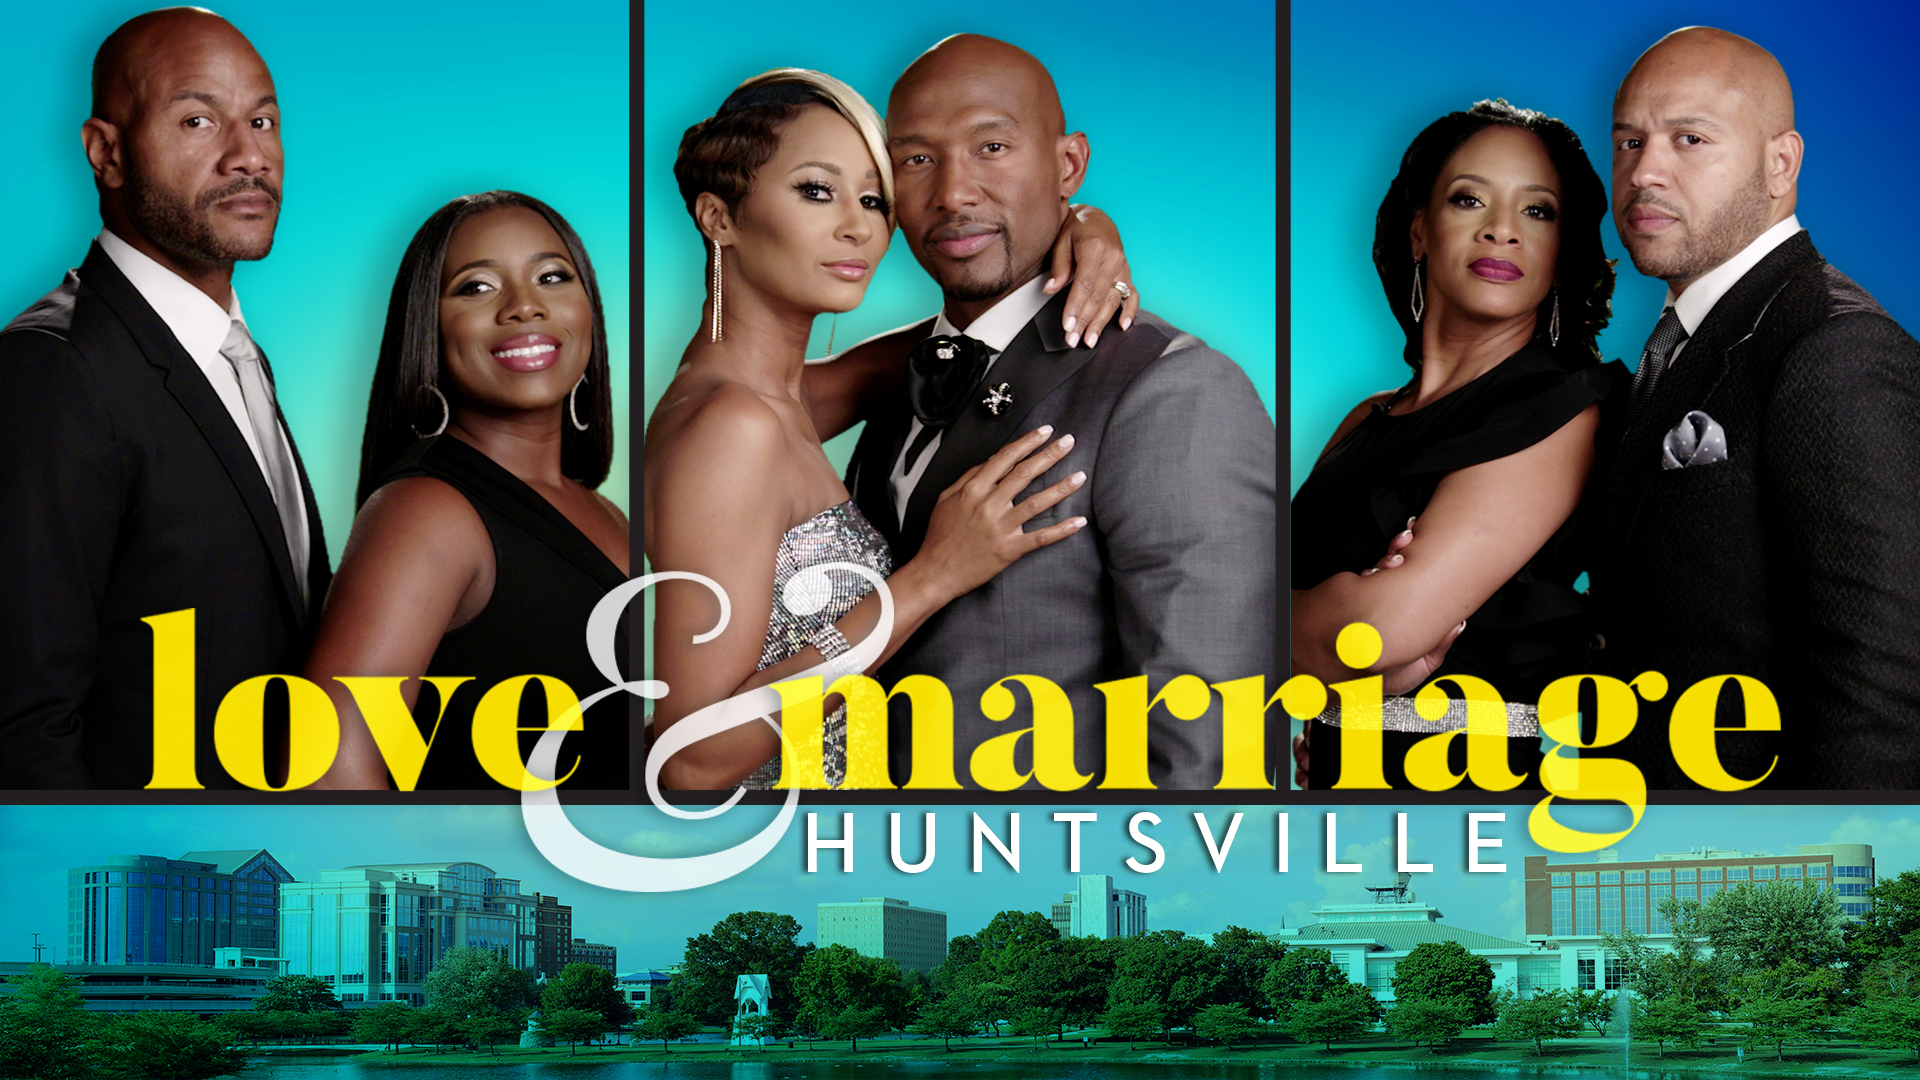 Love & Marriage: Huntsville